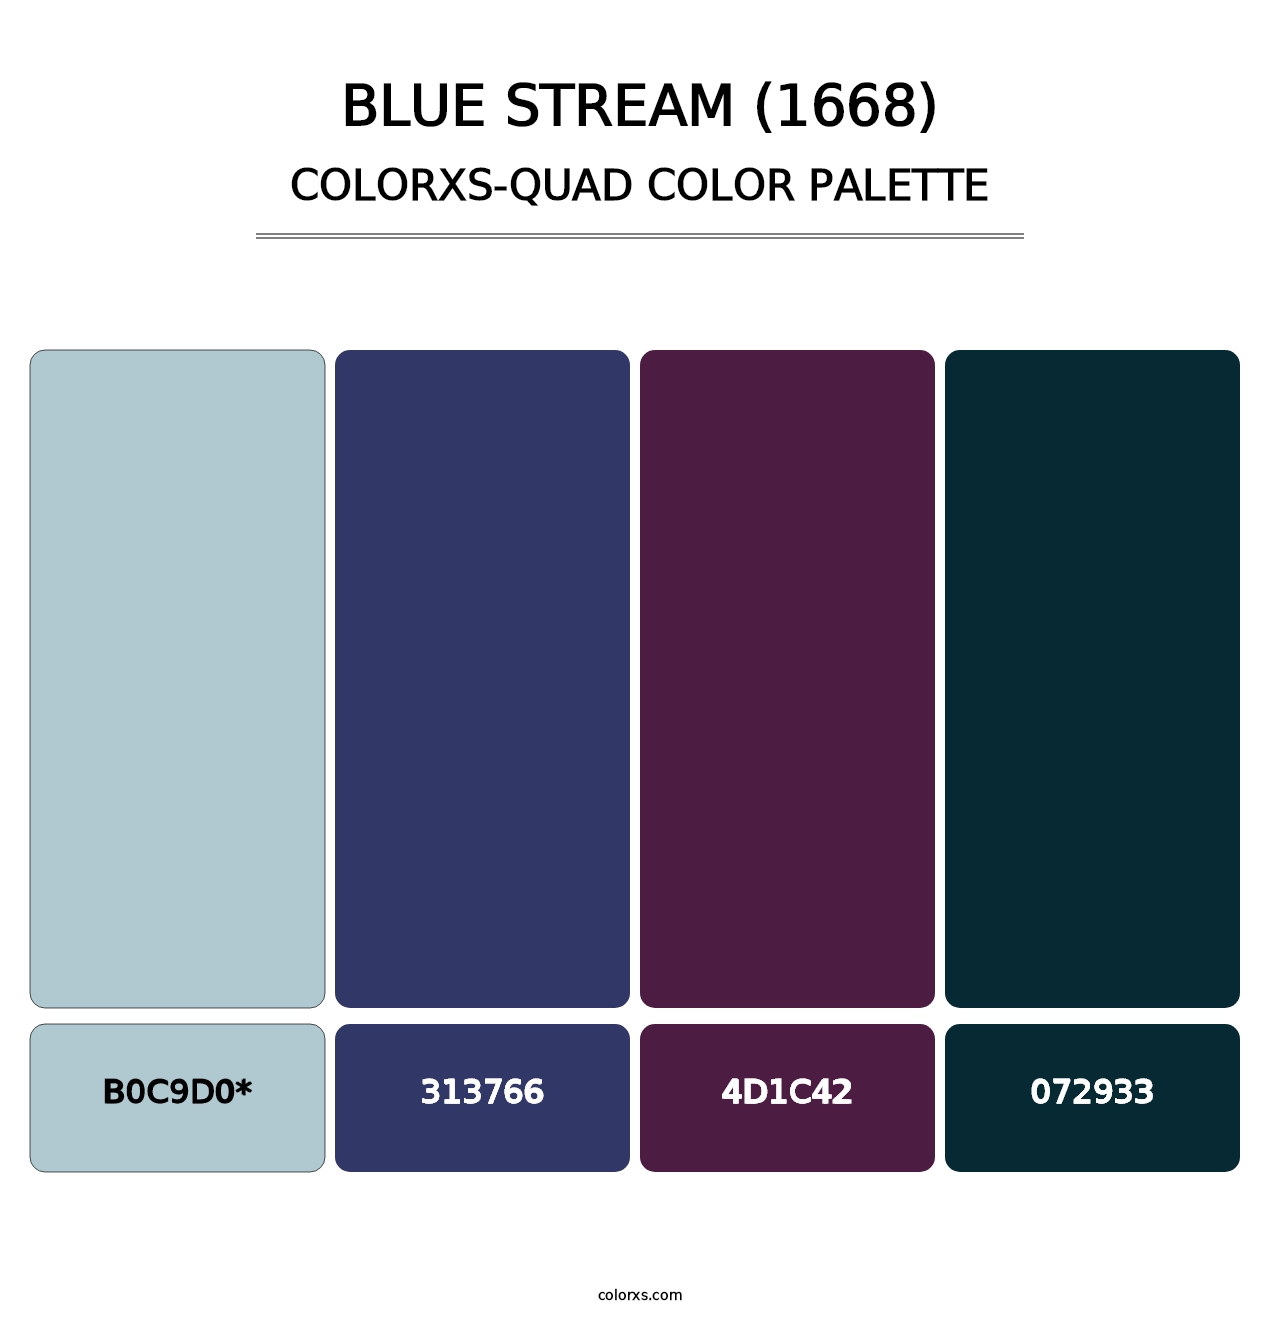 Blue Stream (1668) - Colorxs Quad Palette